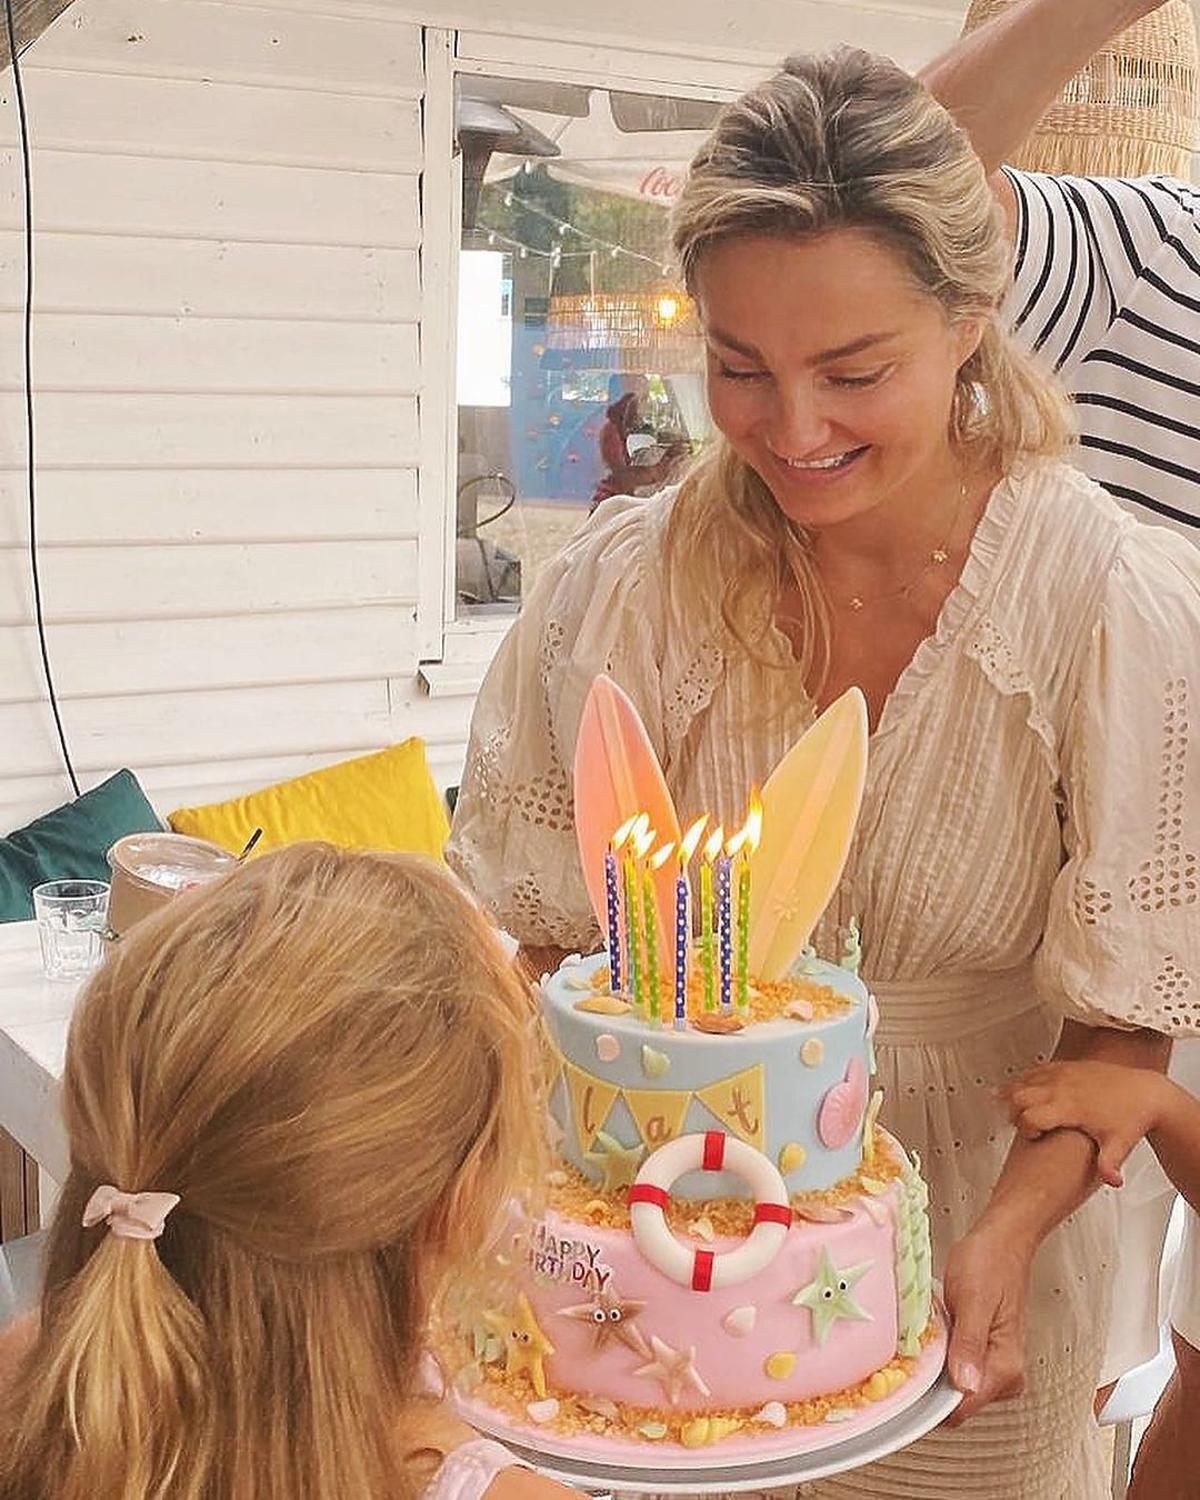 Małgorzata Socha wręcza córce urodzinowy tort